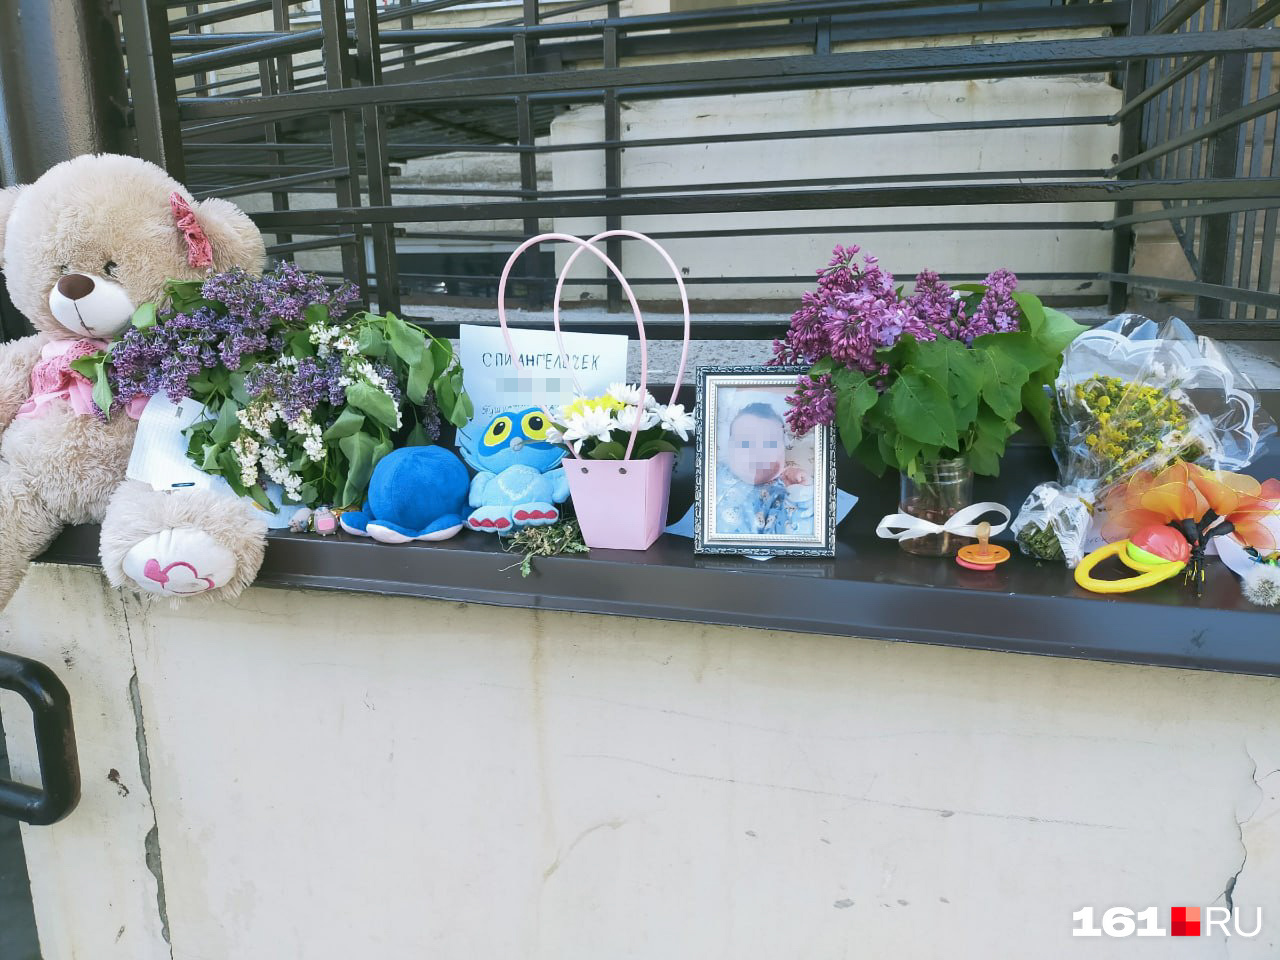 Жители Суворовского организовали в память о малышке мемориал у подъезда, куда несут цветы и игрушки